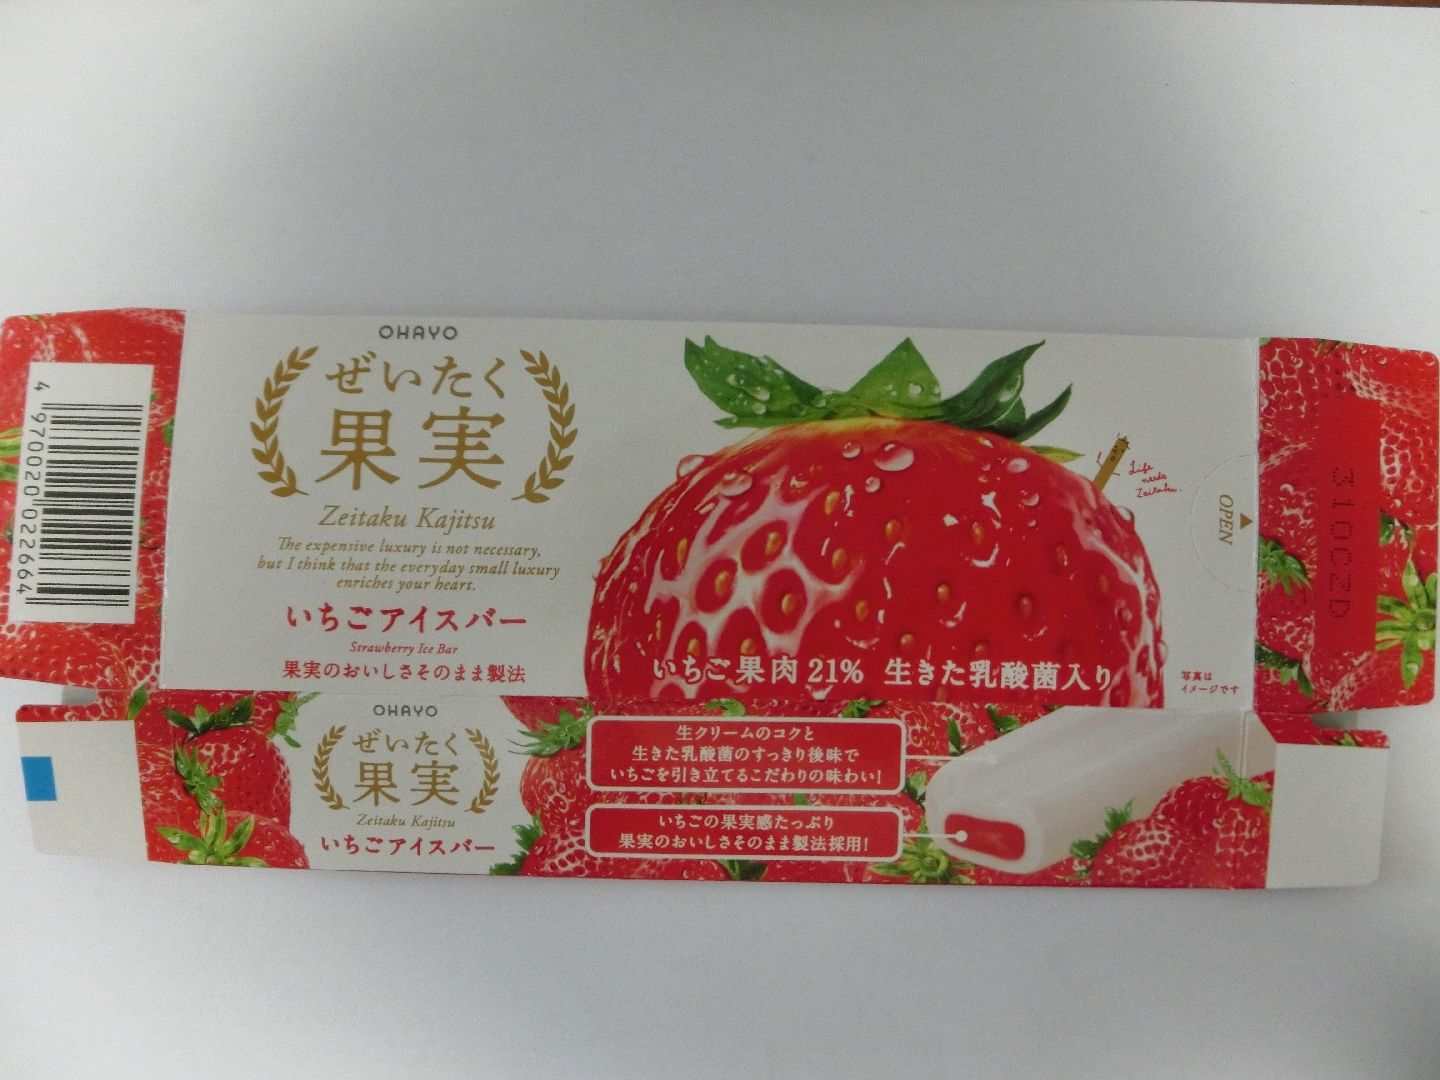 ohayo_zetaiku_kajitsu_strawberry_f1.jpg